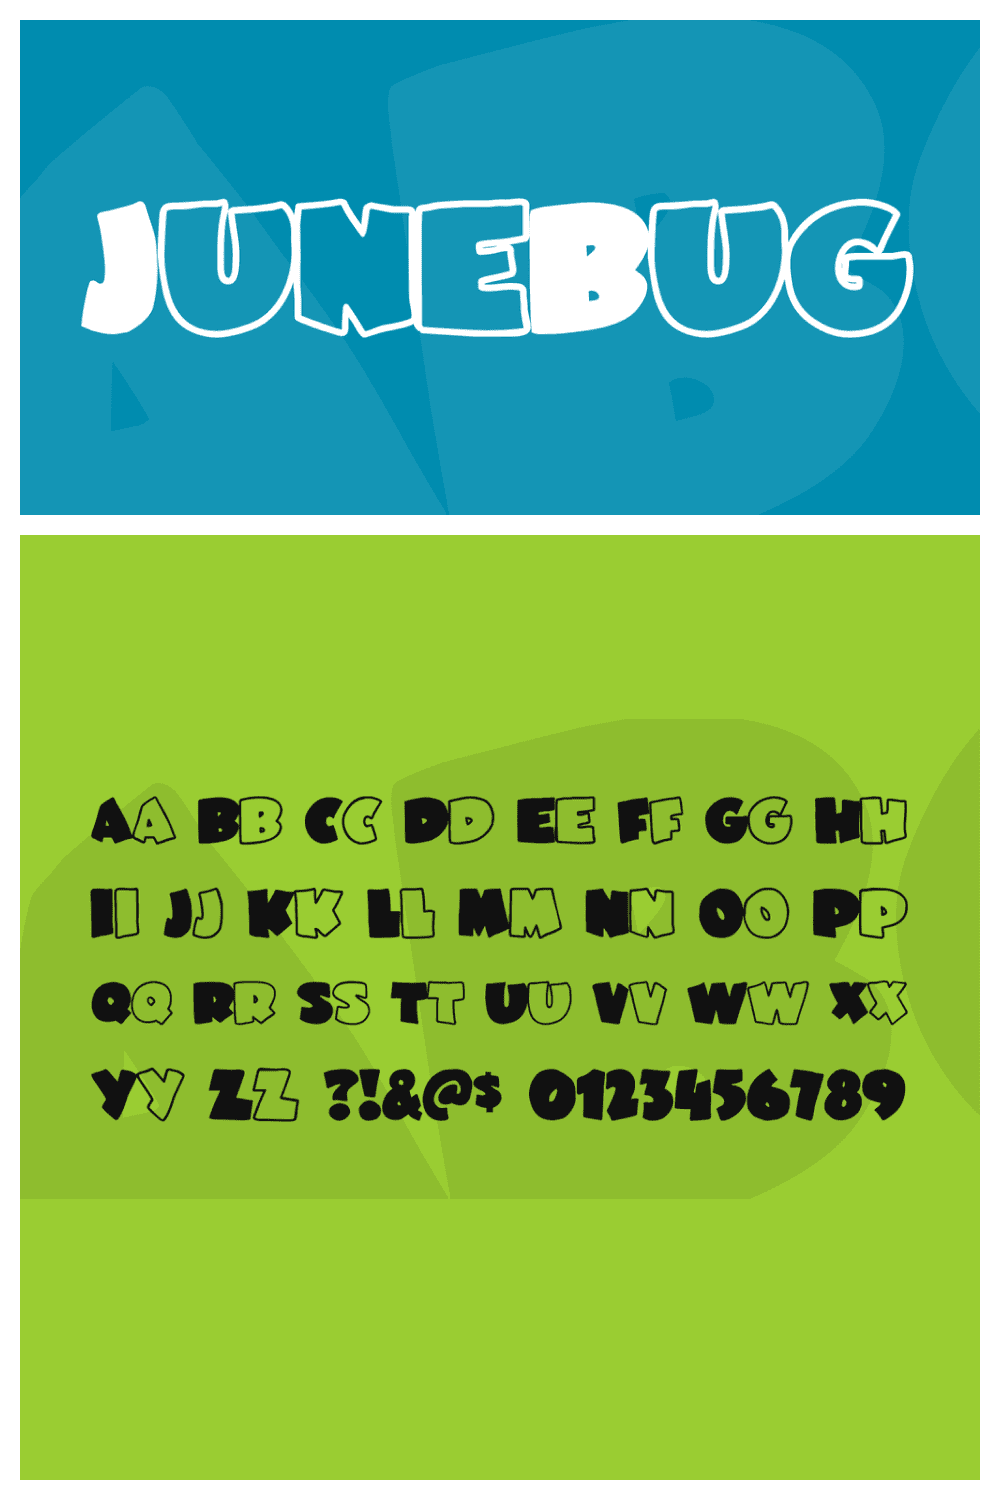 JuneBug font.